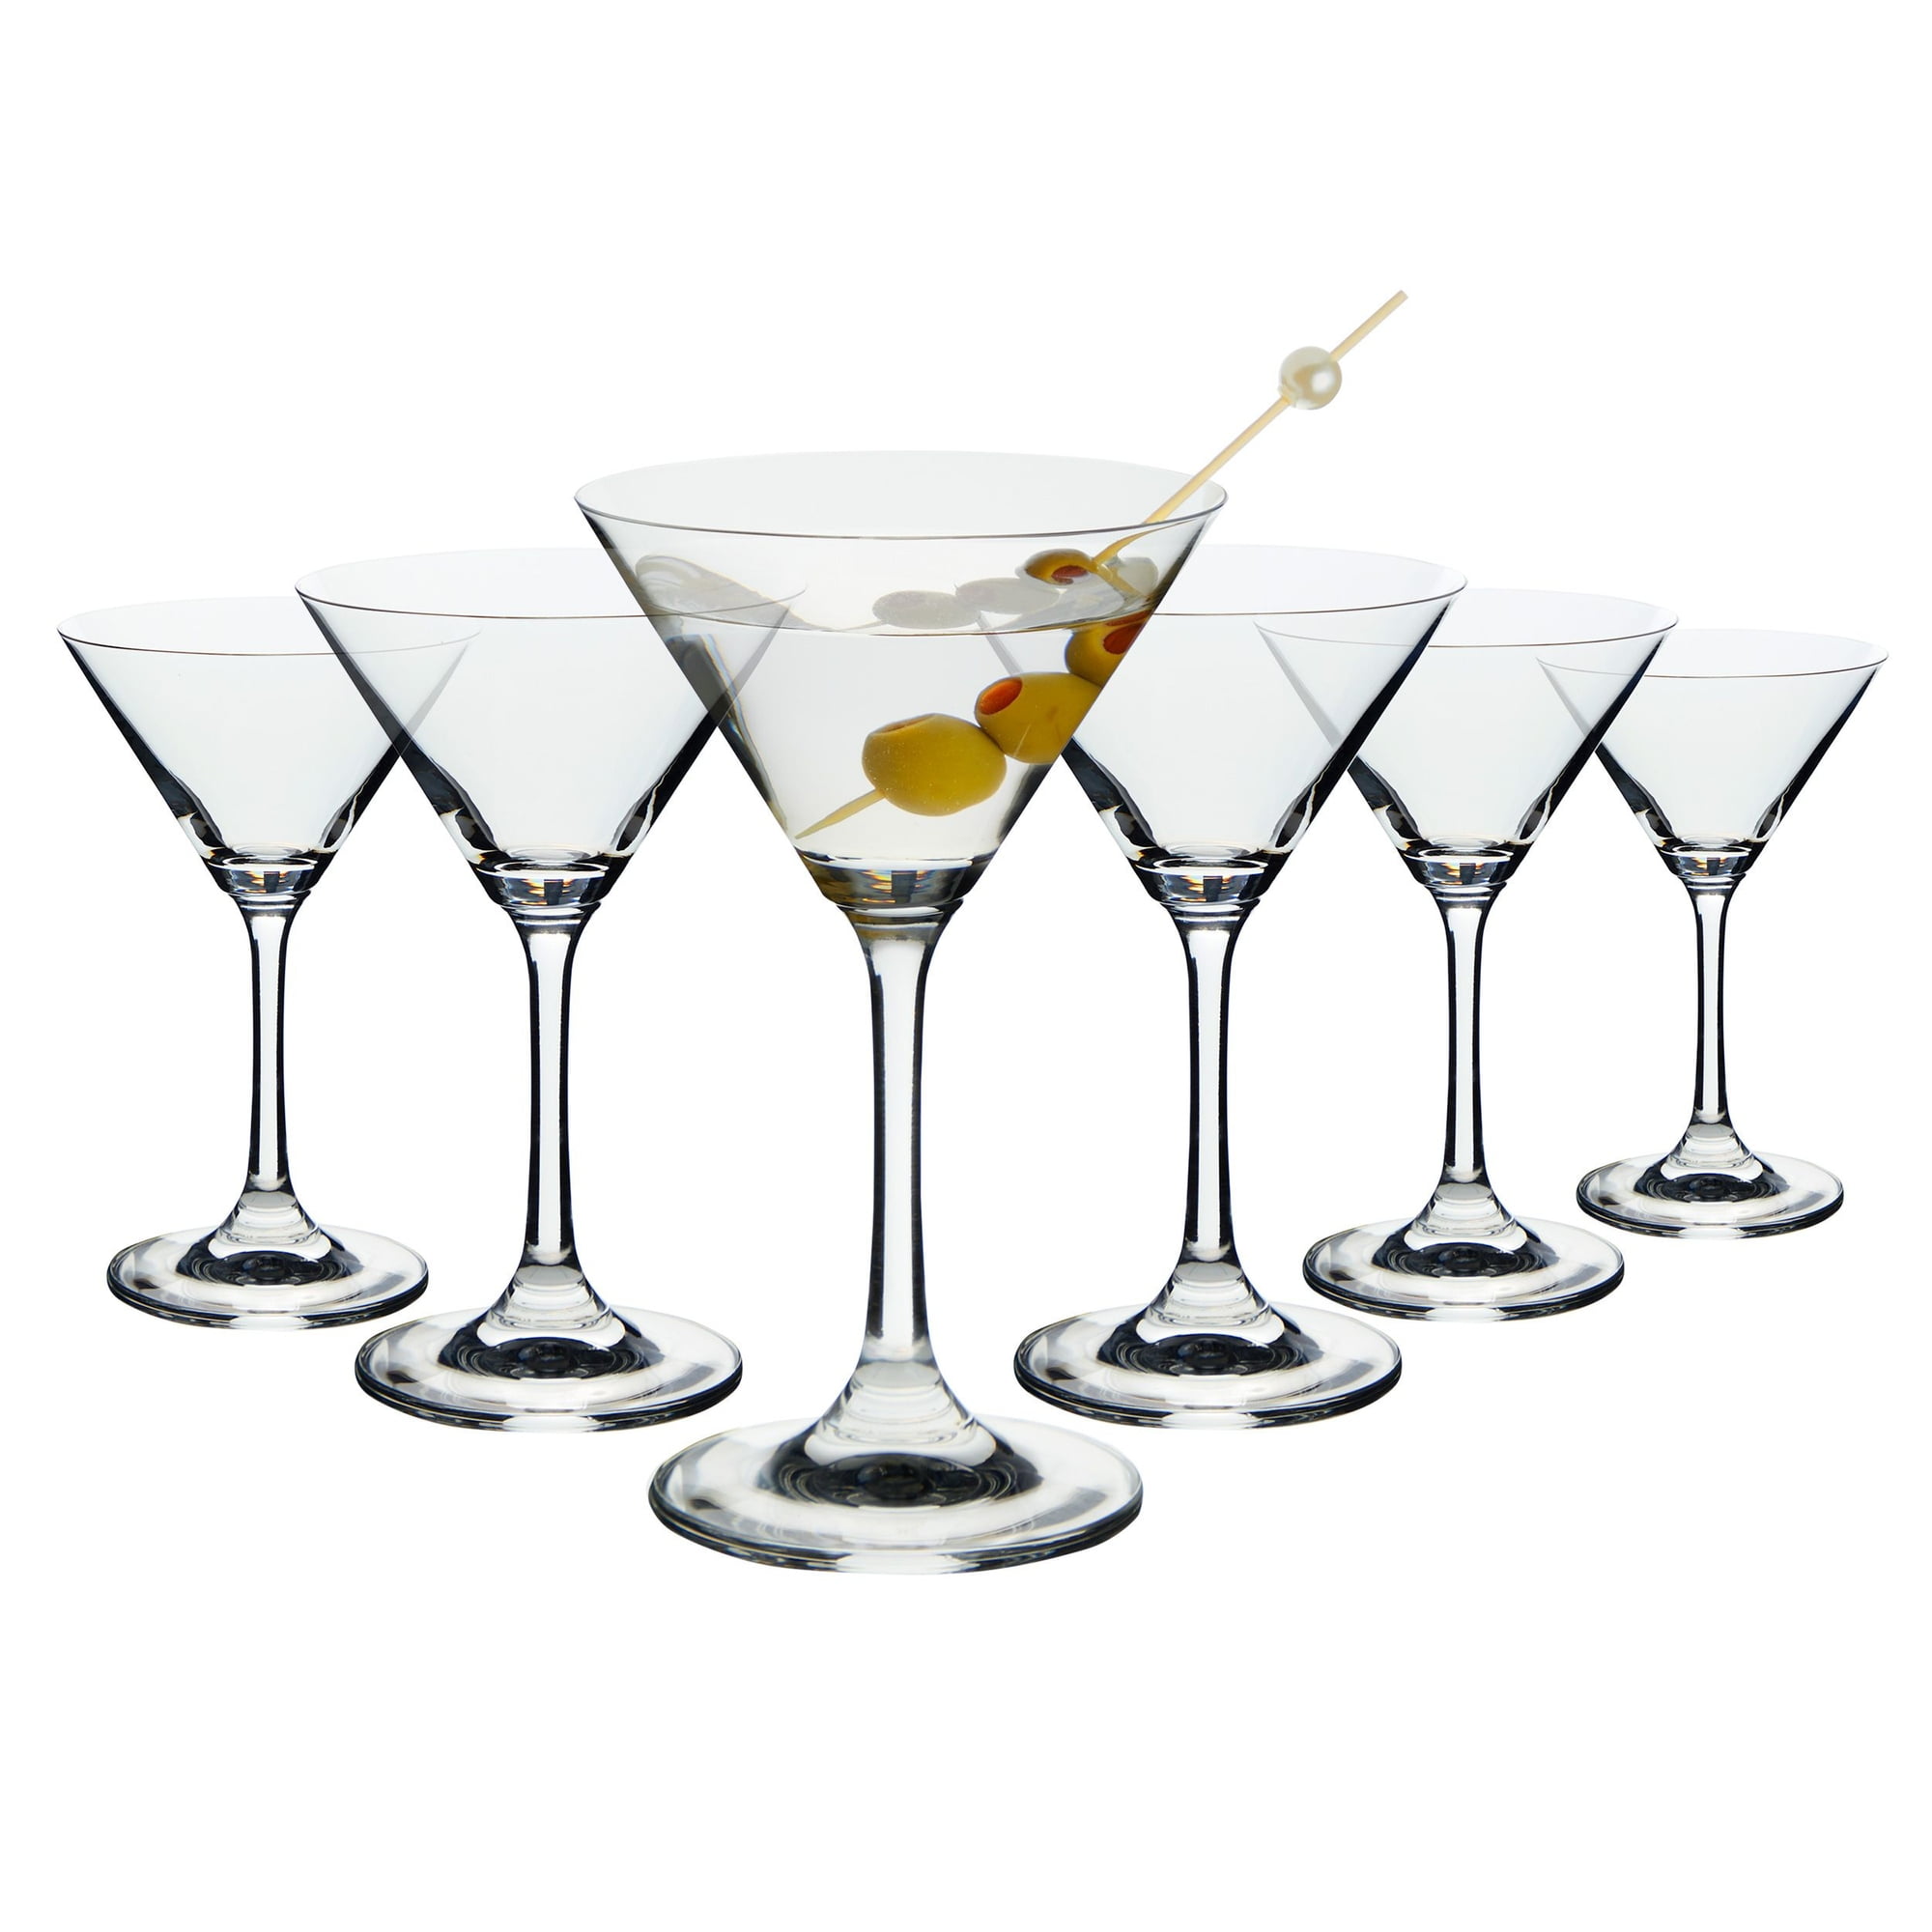  Roshtia 16 Pcs Glass Cocktail Shaker Set Martini